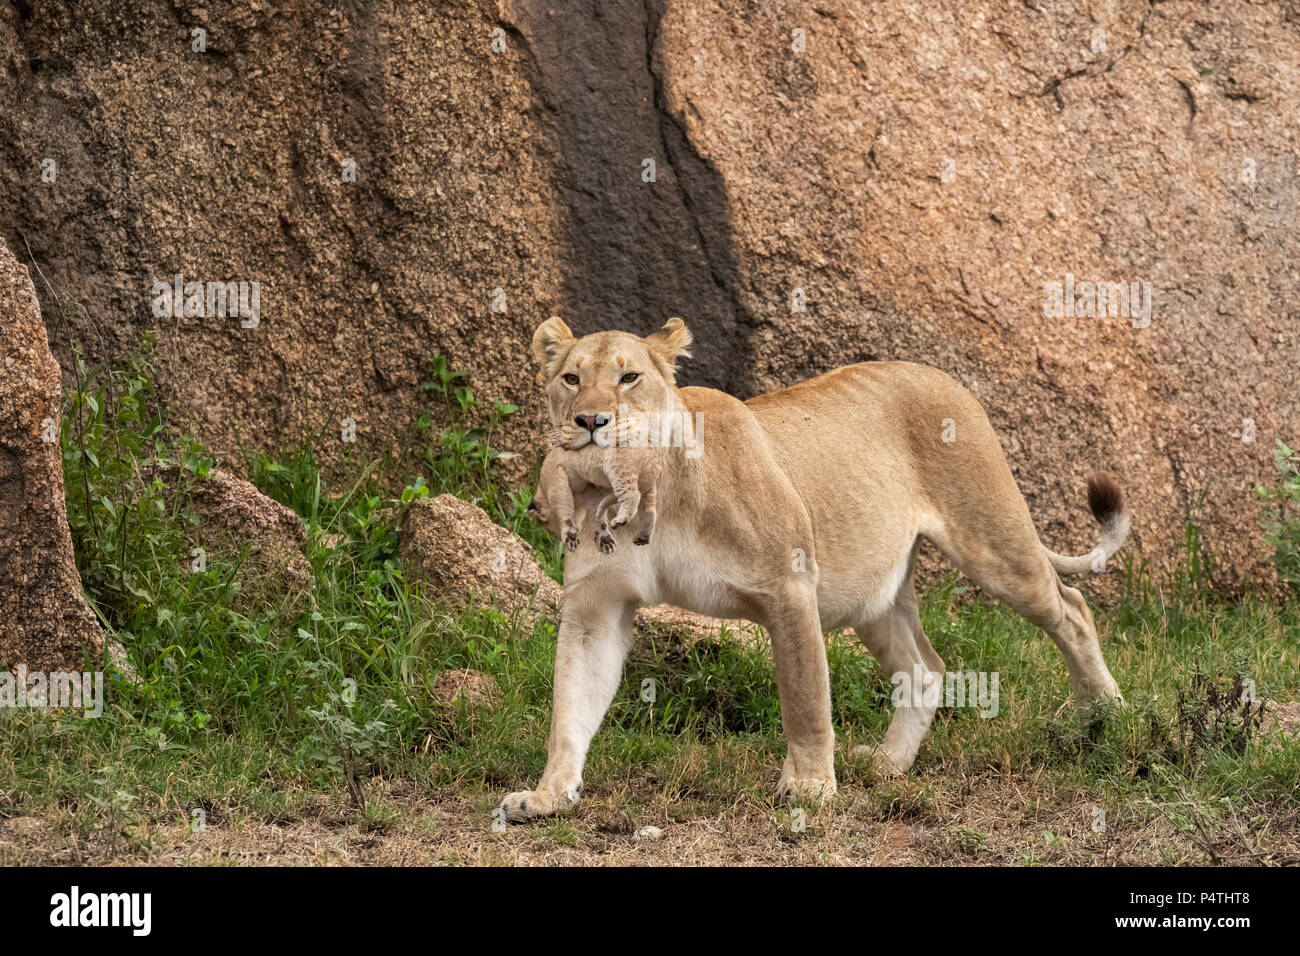 L'African Lion lionne (Panthera leo) transportant son très jeune cub dans sa bouche dans le Parc National du Serengeti, Tanzanie Banque D'Images